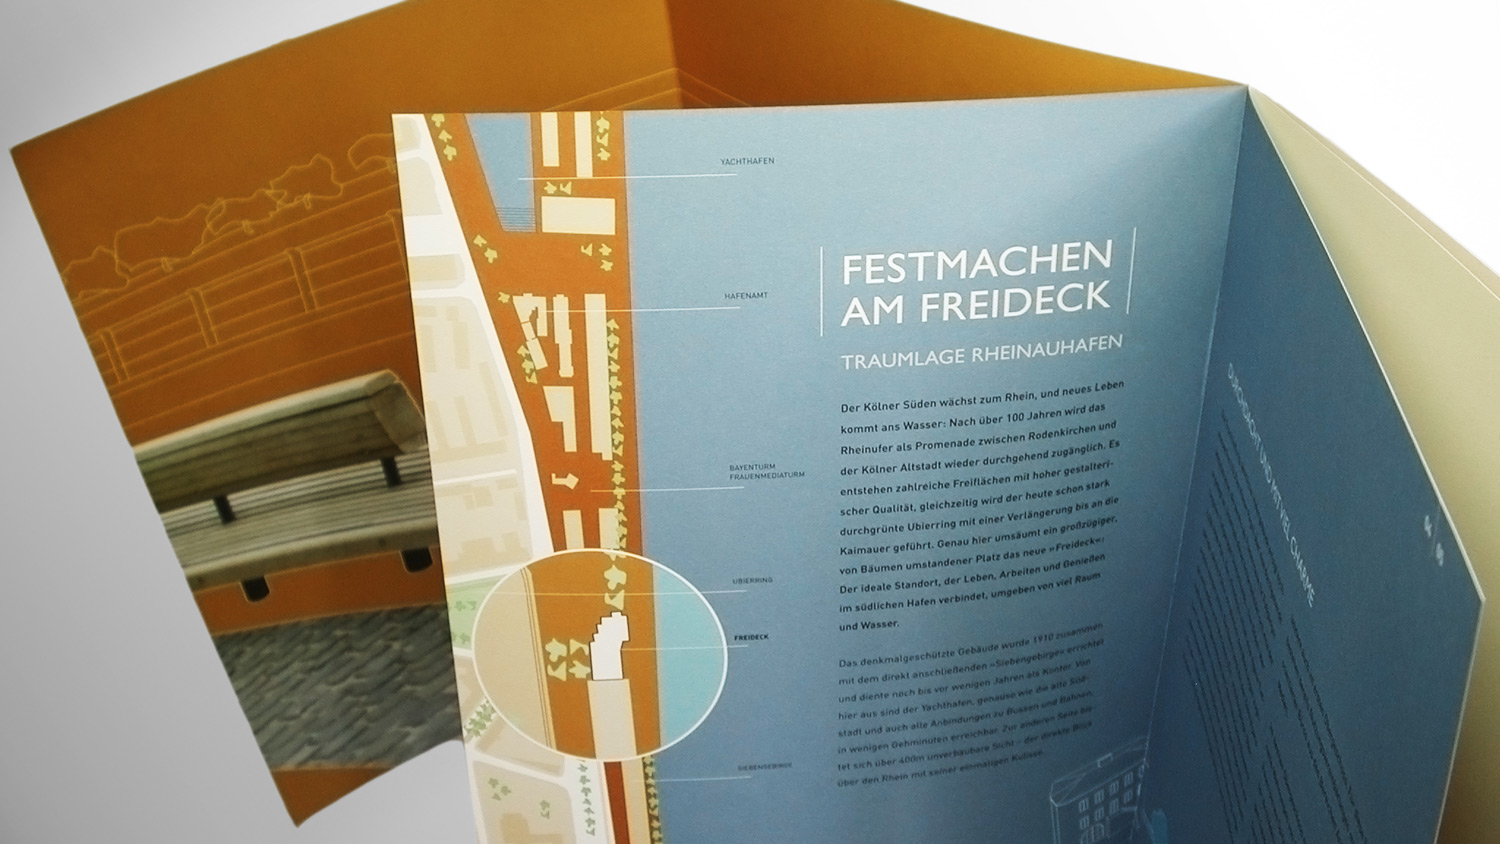 Corporate Design und Immobilienmarketing für »Freideck«